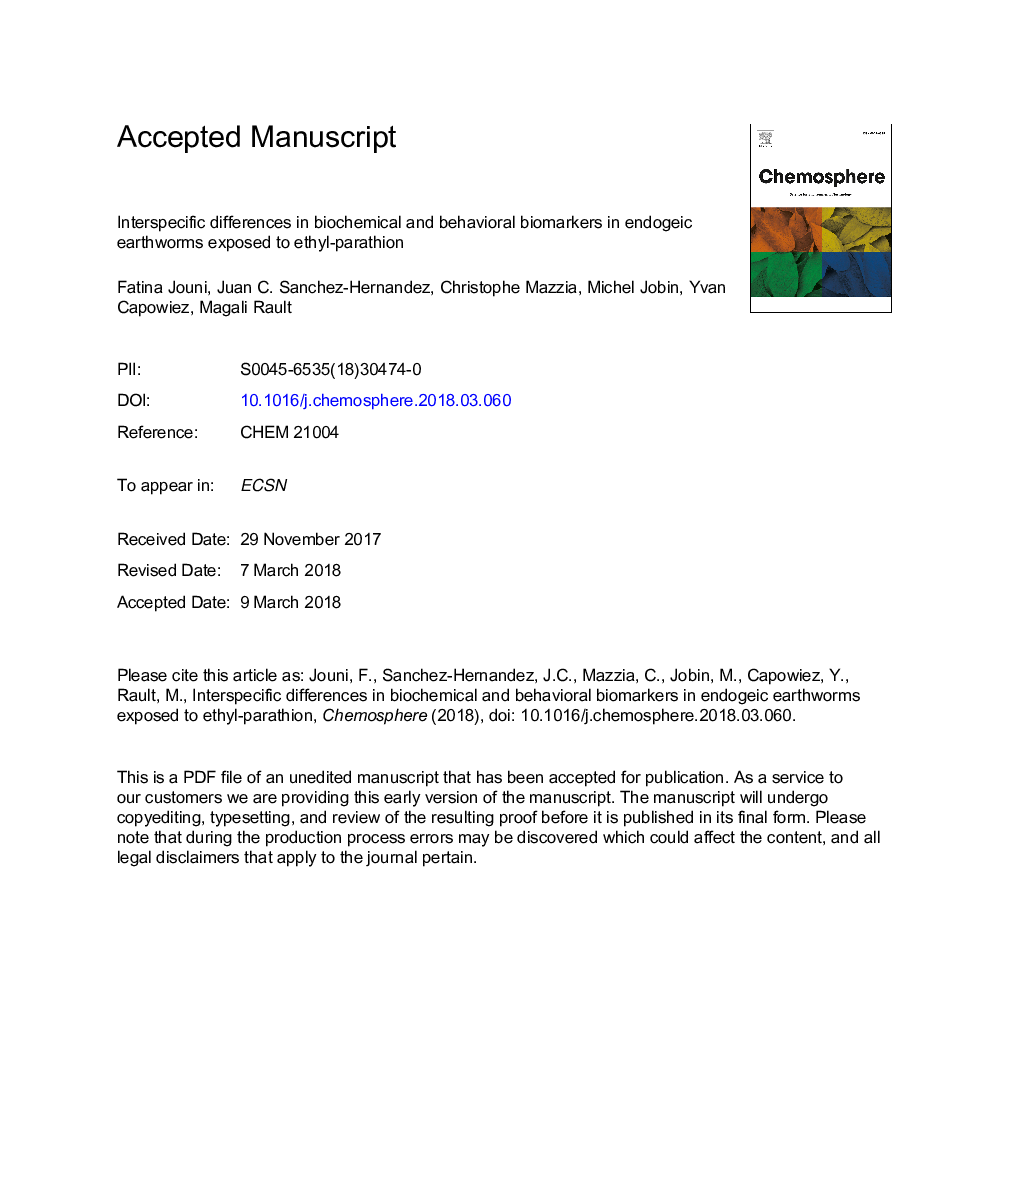 تفاوت بین گونه های بیومارکرهای بیوشیمیایی و رفتاری در کرم های خاکی اندوژن در معرض اتیل-پاراتیون 